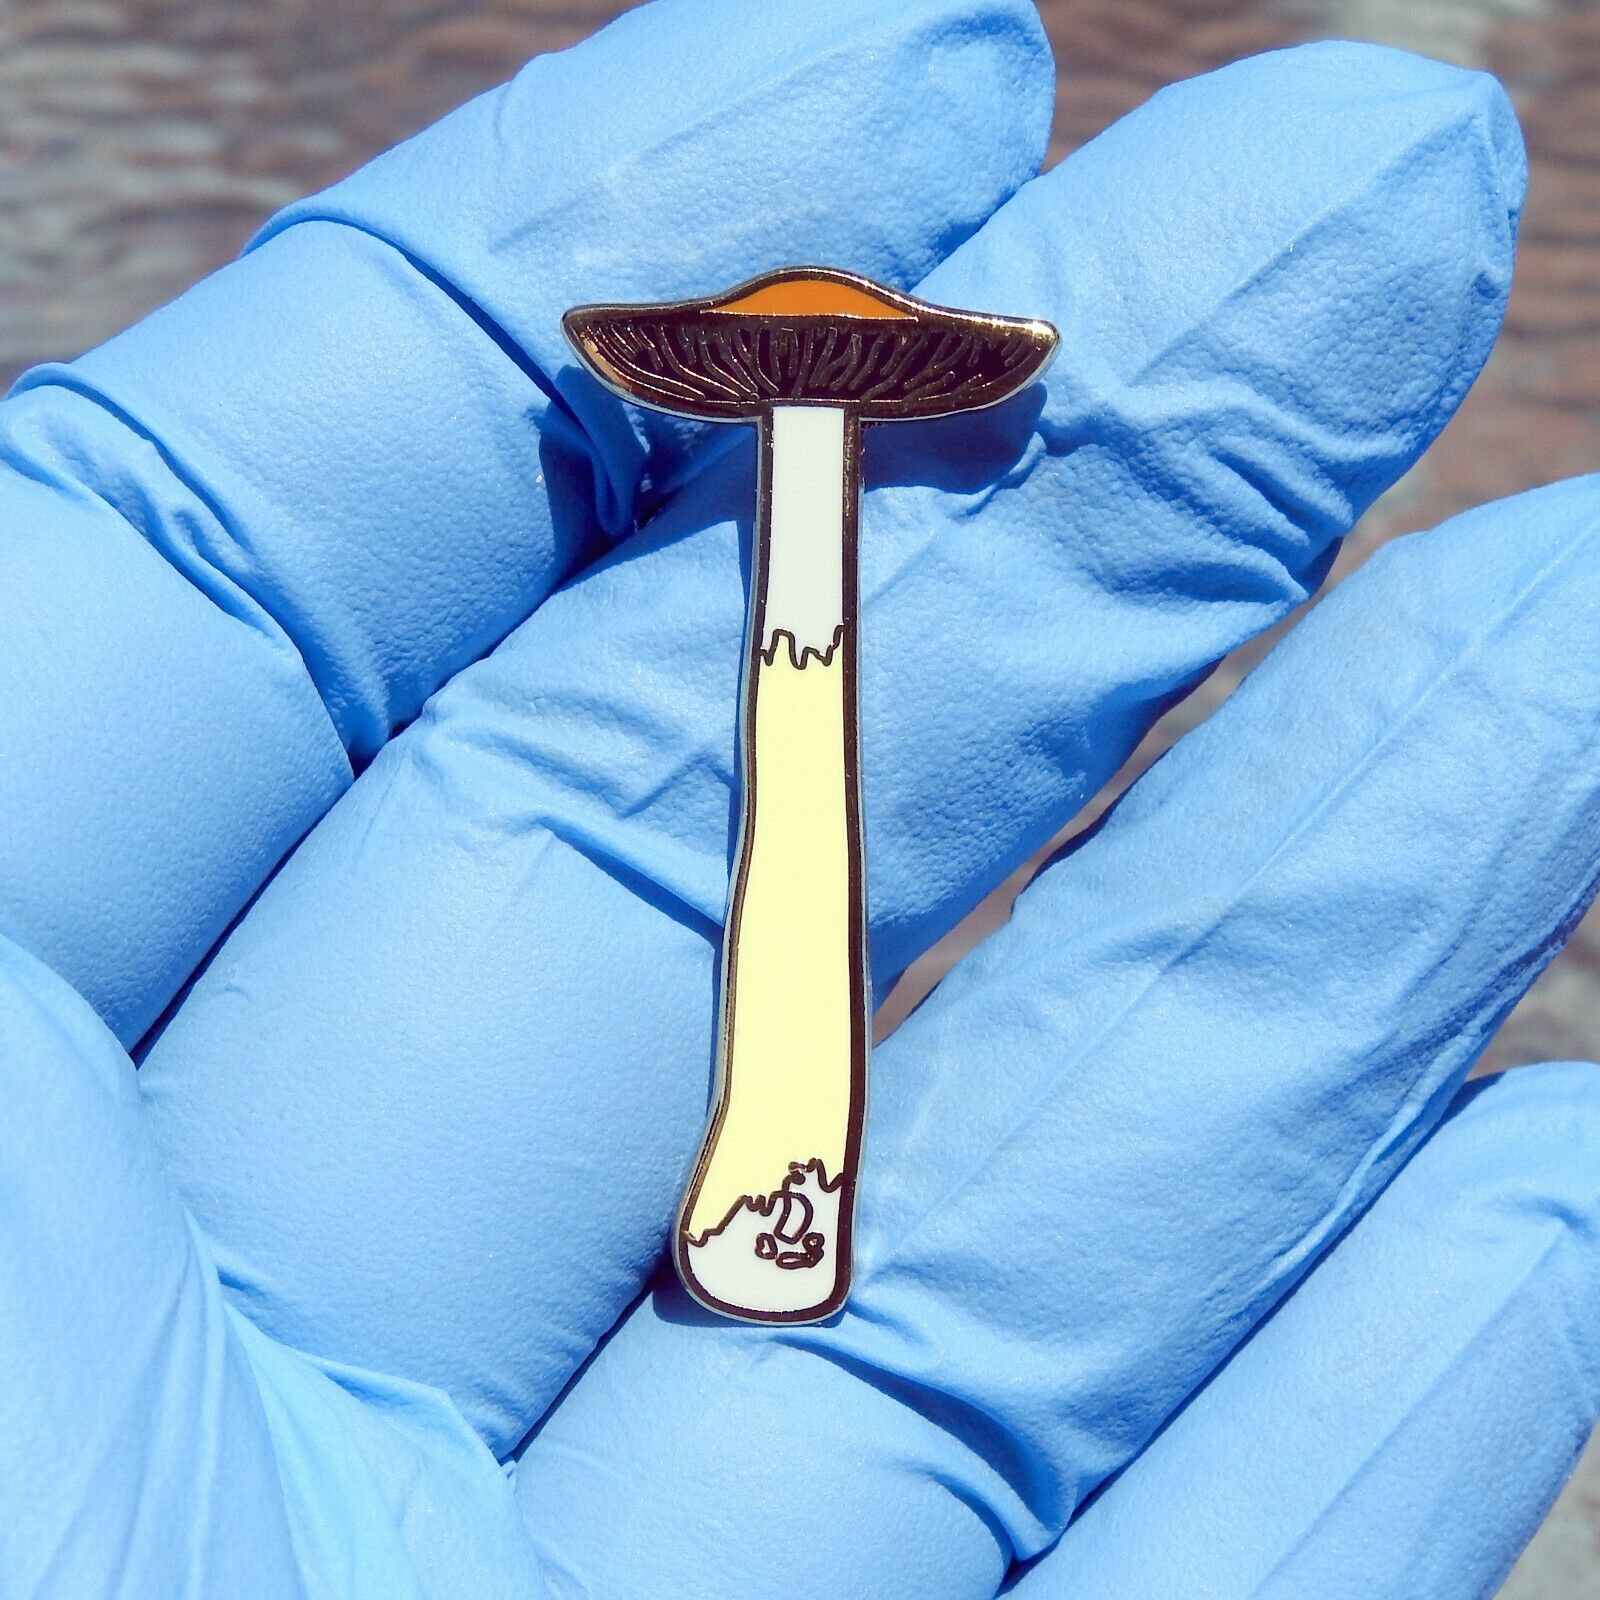 Magic Mushroom psilocybe cubensis lapel hat pin